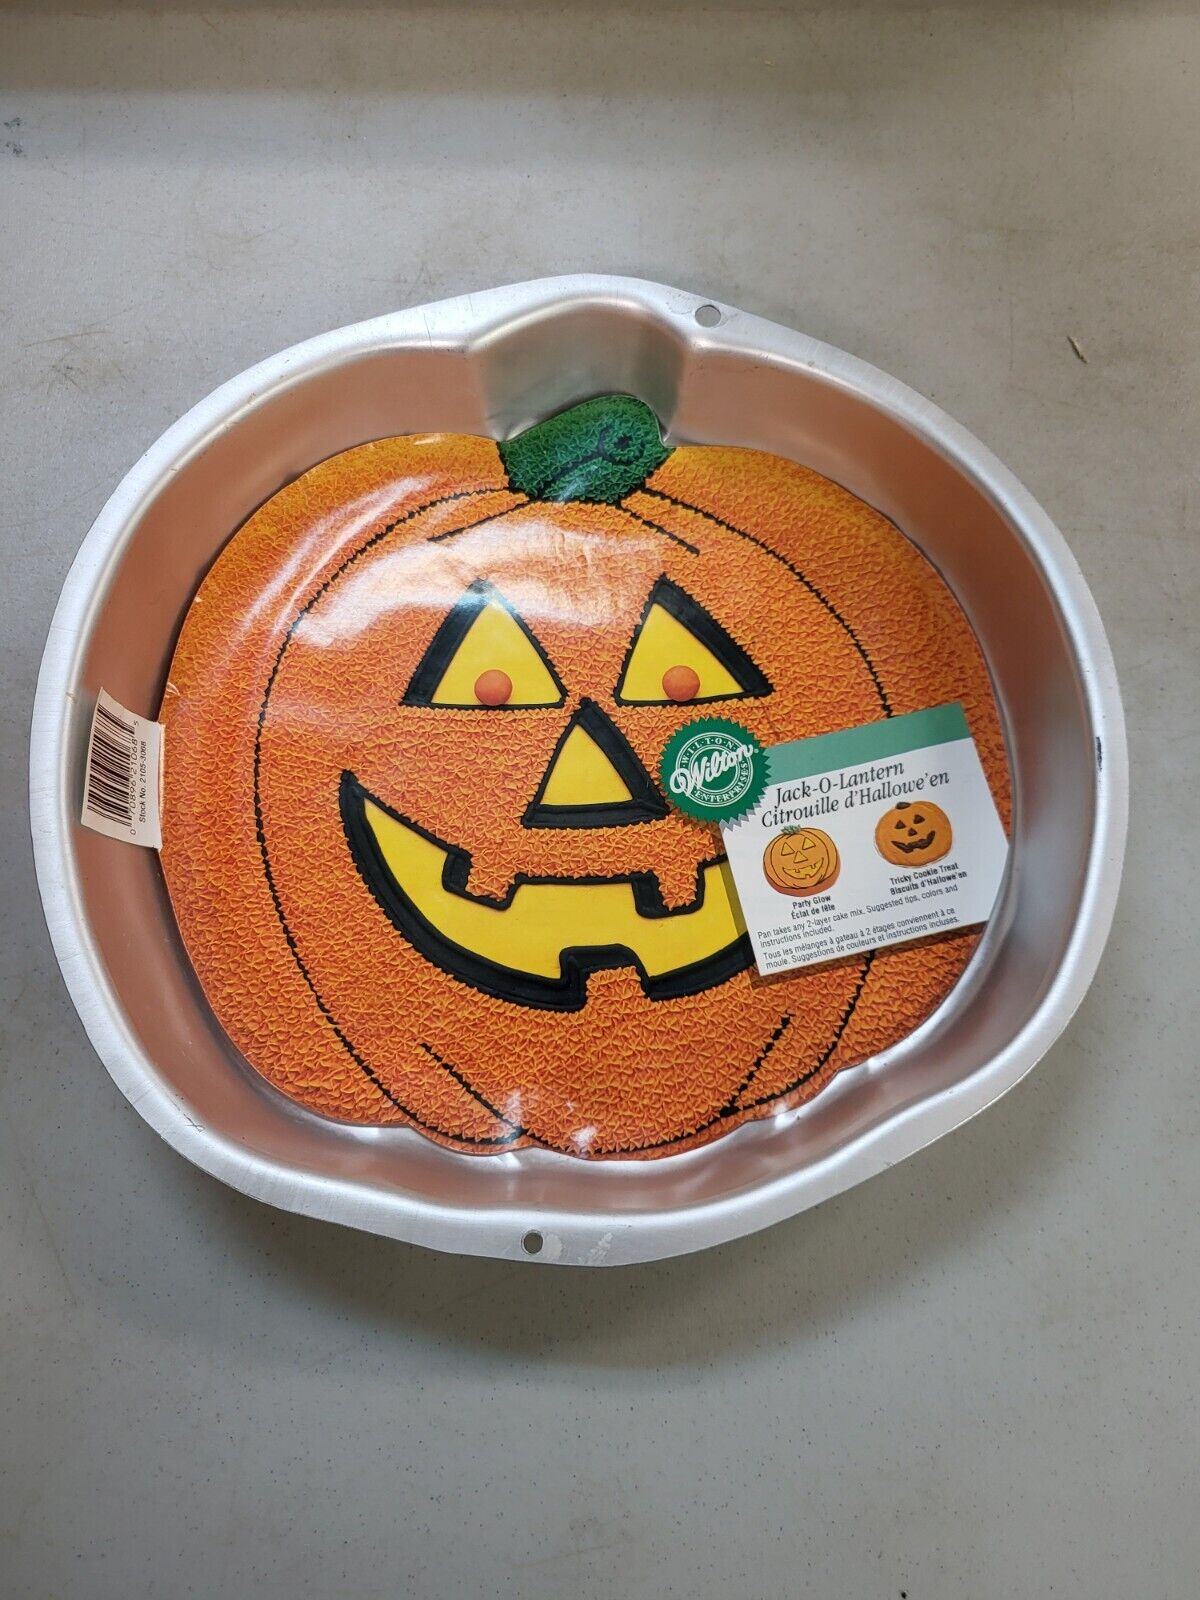 1995 Wilton Jack-O-Lantern Pumpkin Halloween Cake Baking Pan (2105-3068)